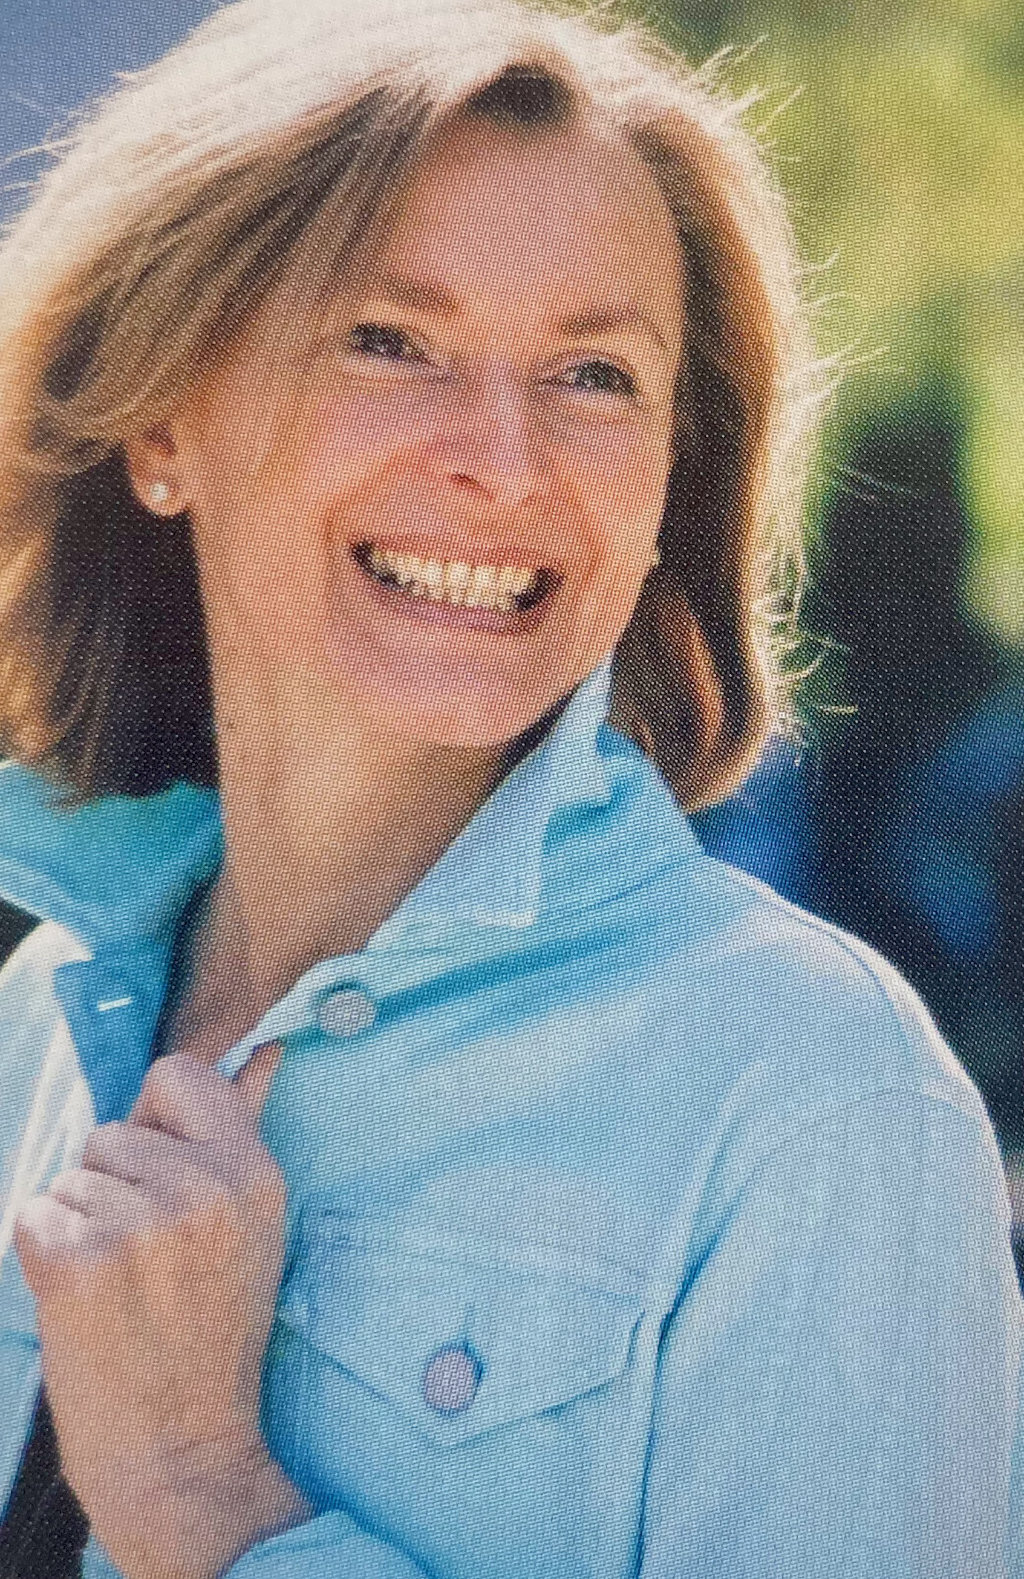 Doris Nachbargauer